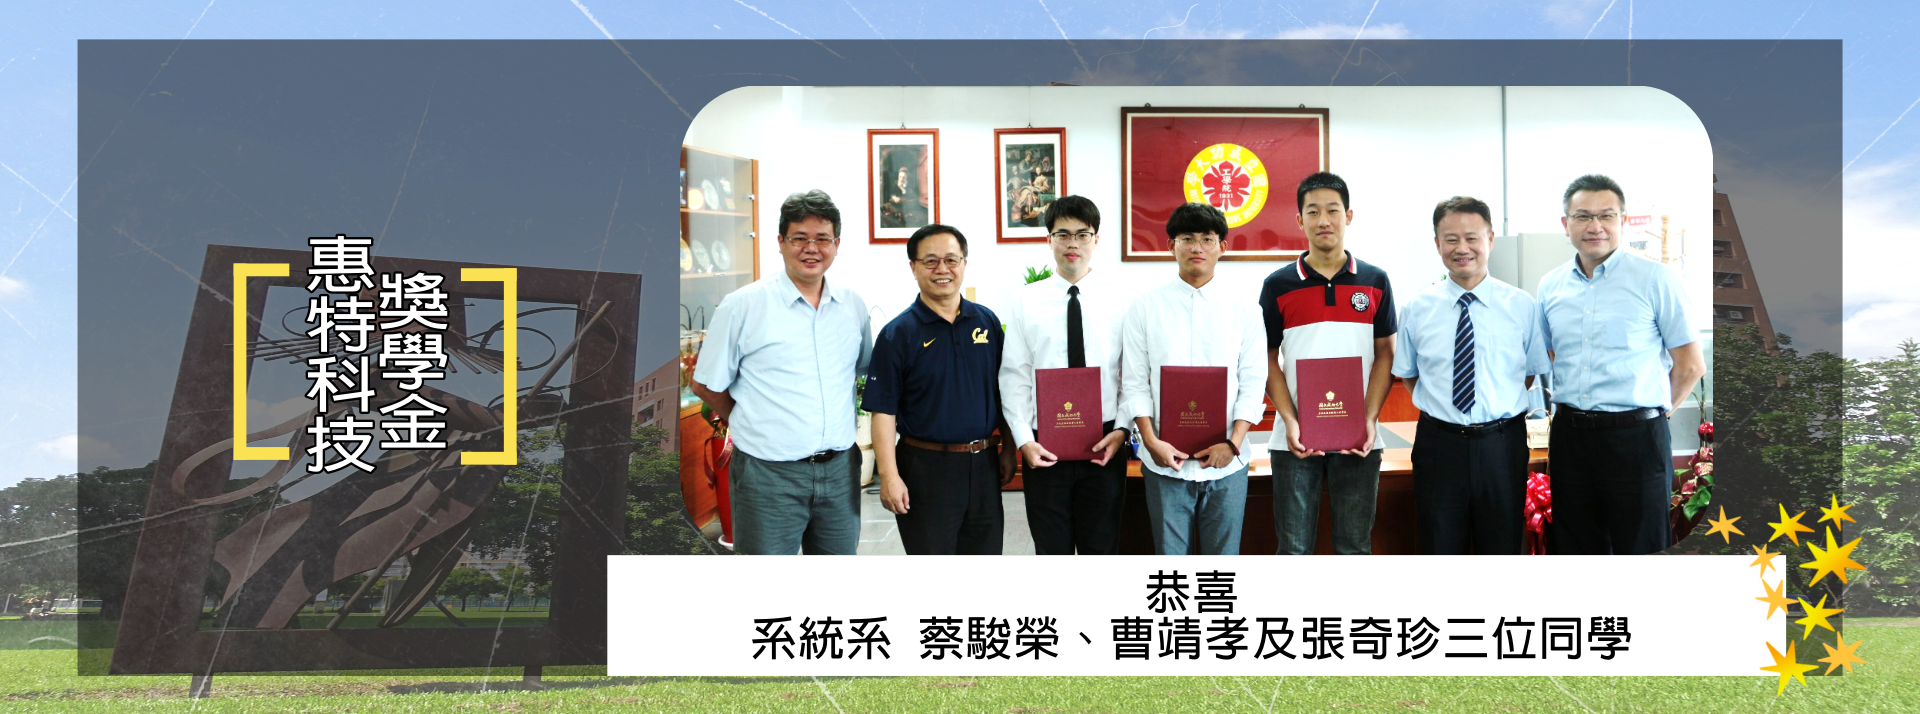 恭喜系統系蔡駿榮、曹靖孝及張奇珍三位同學榮獲惠特科技獎學金